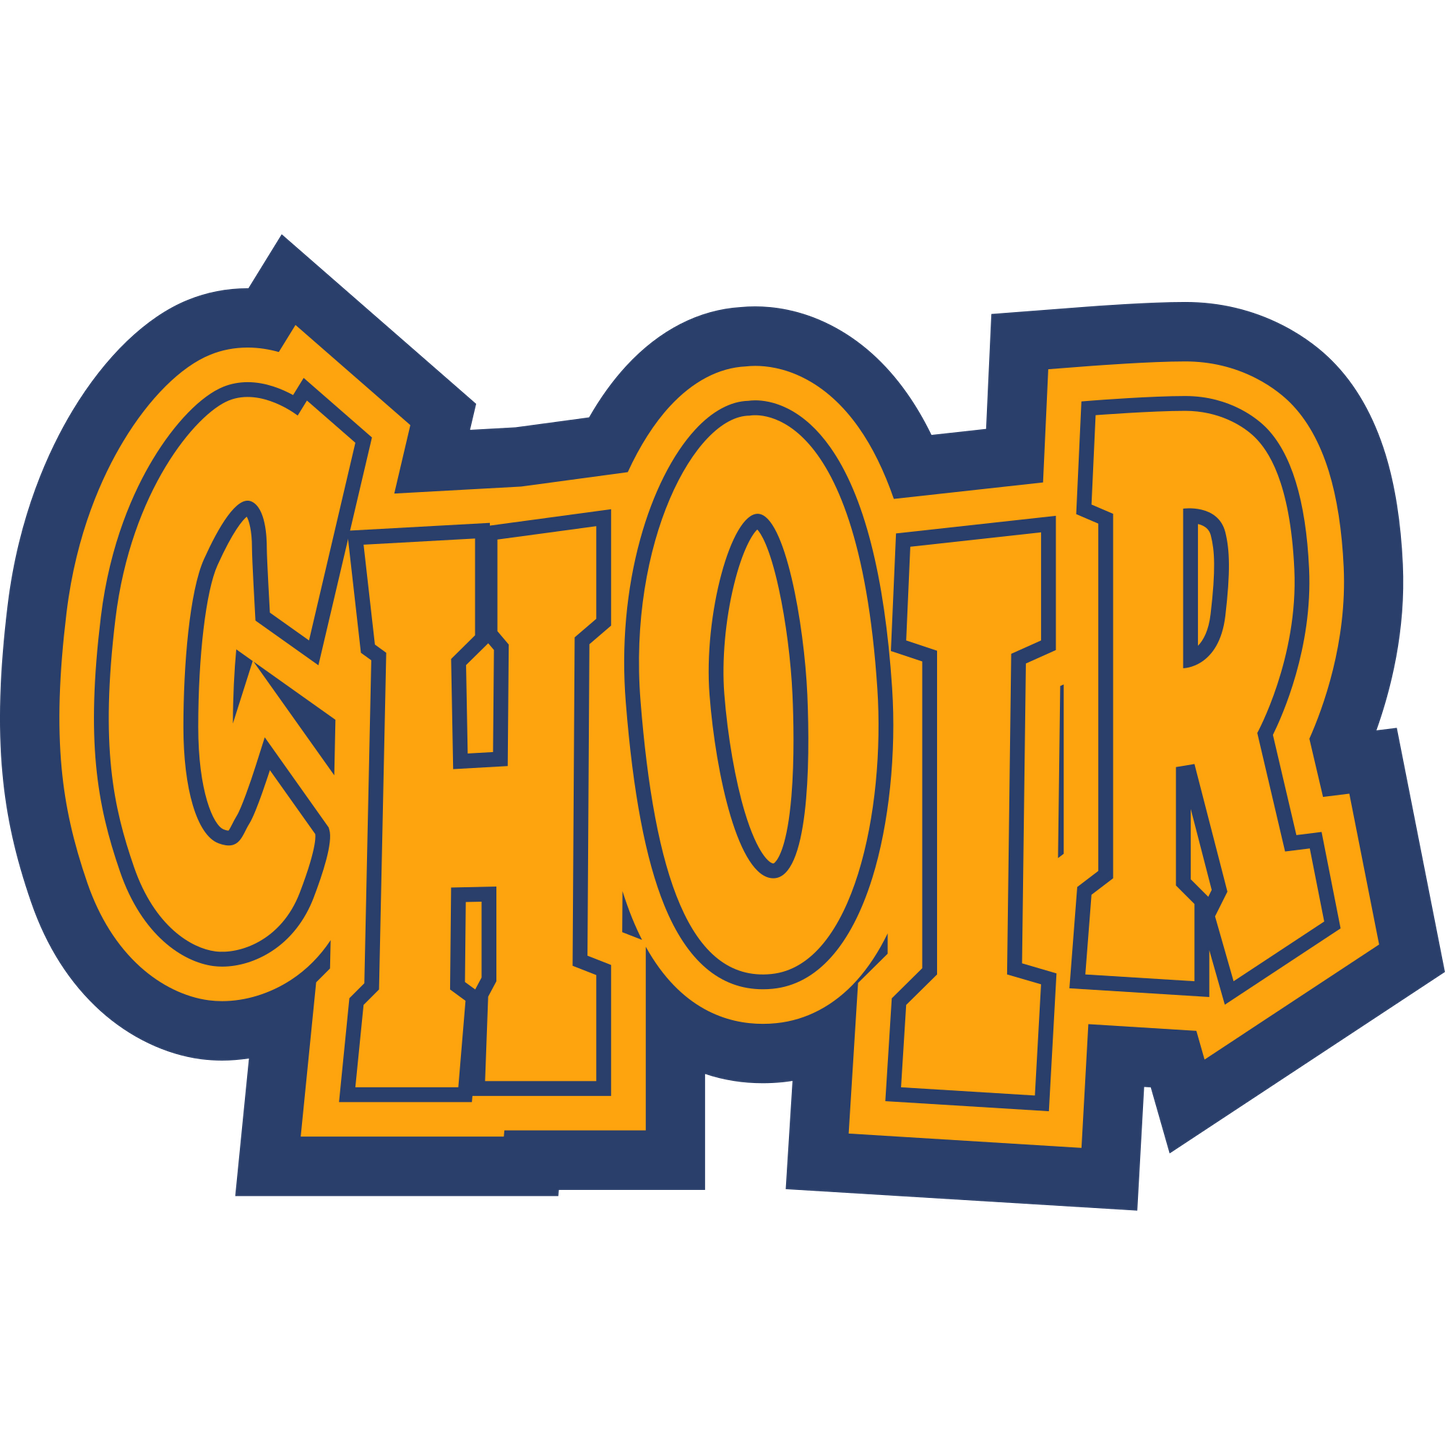 TCHOIR - Choir Sleeve Patch